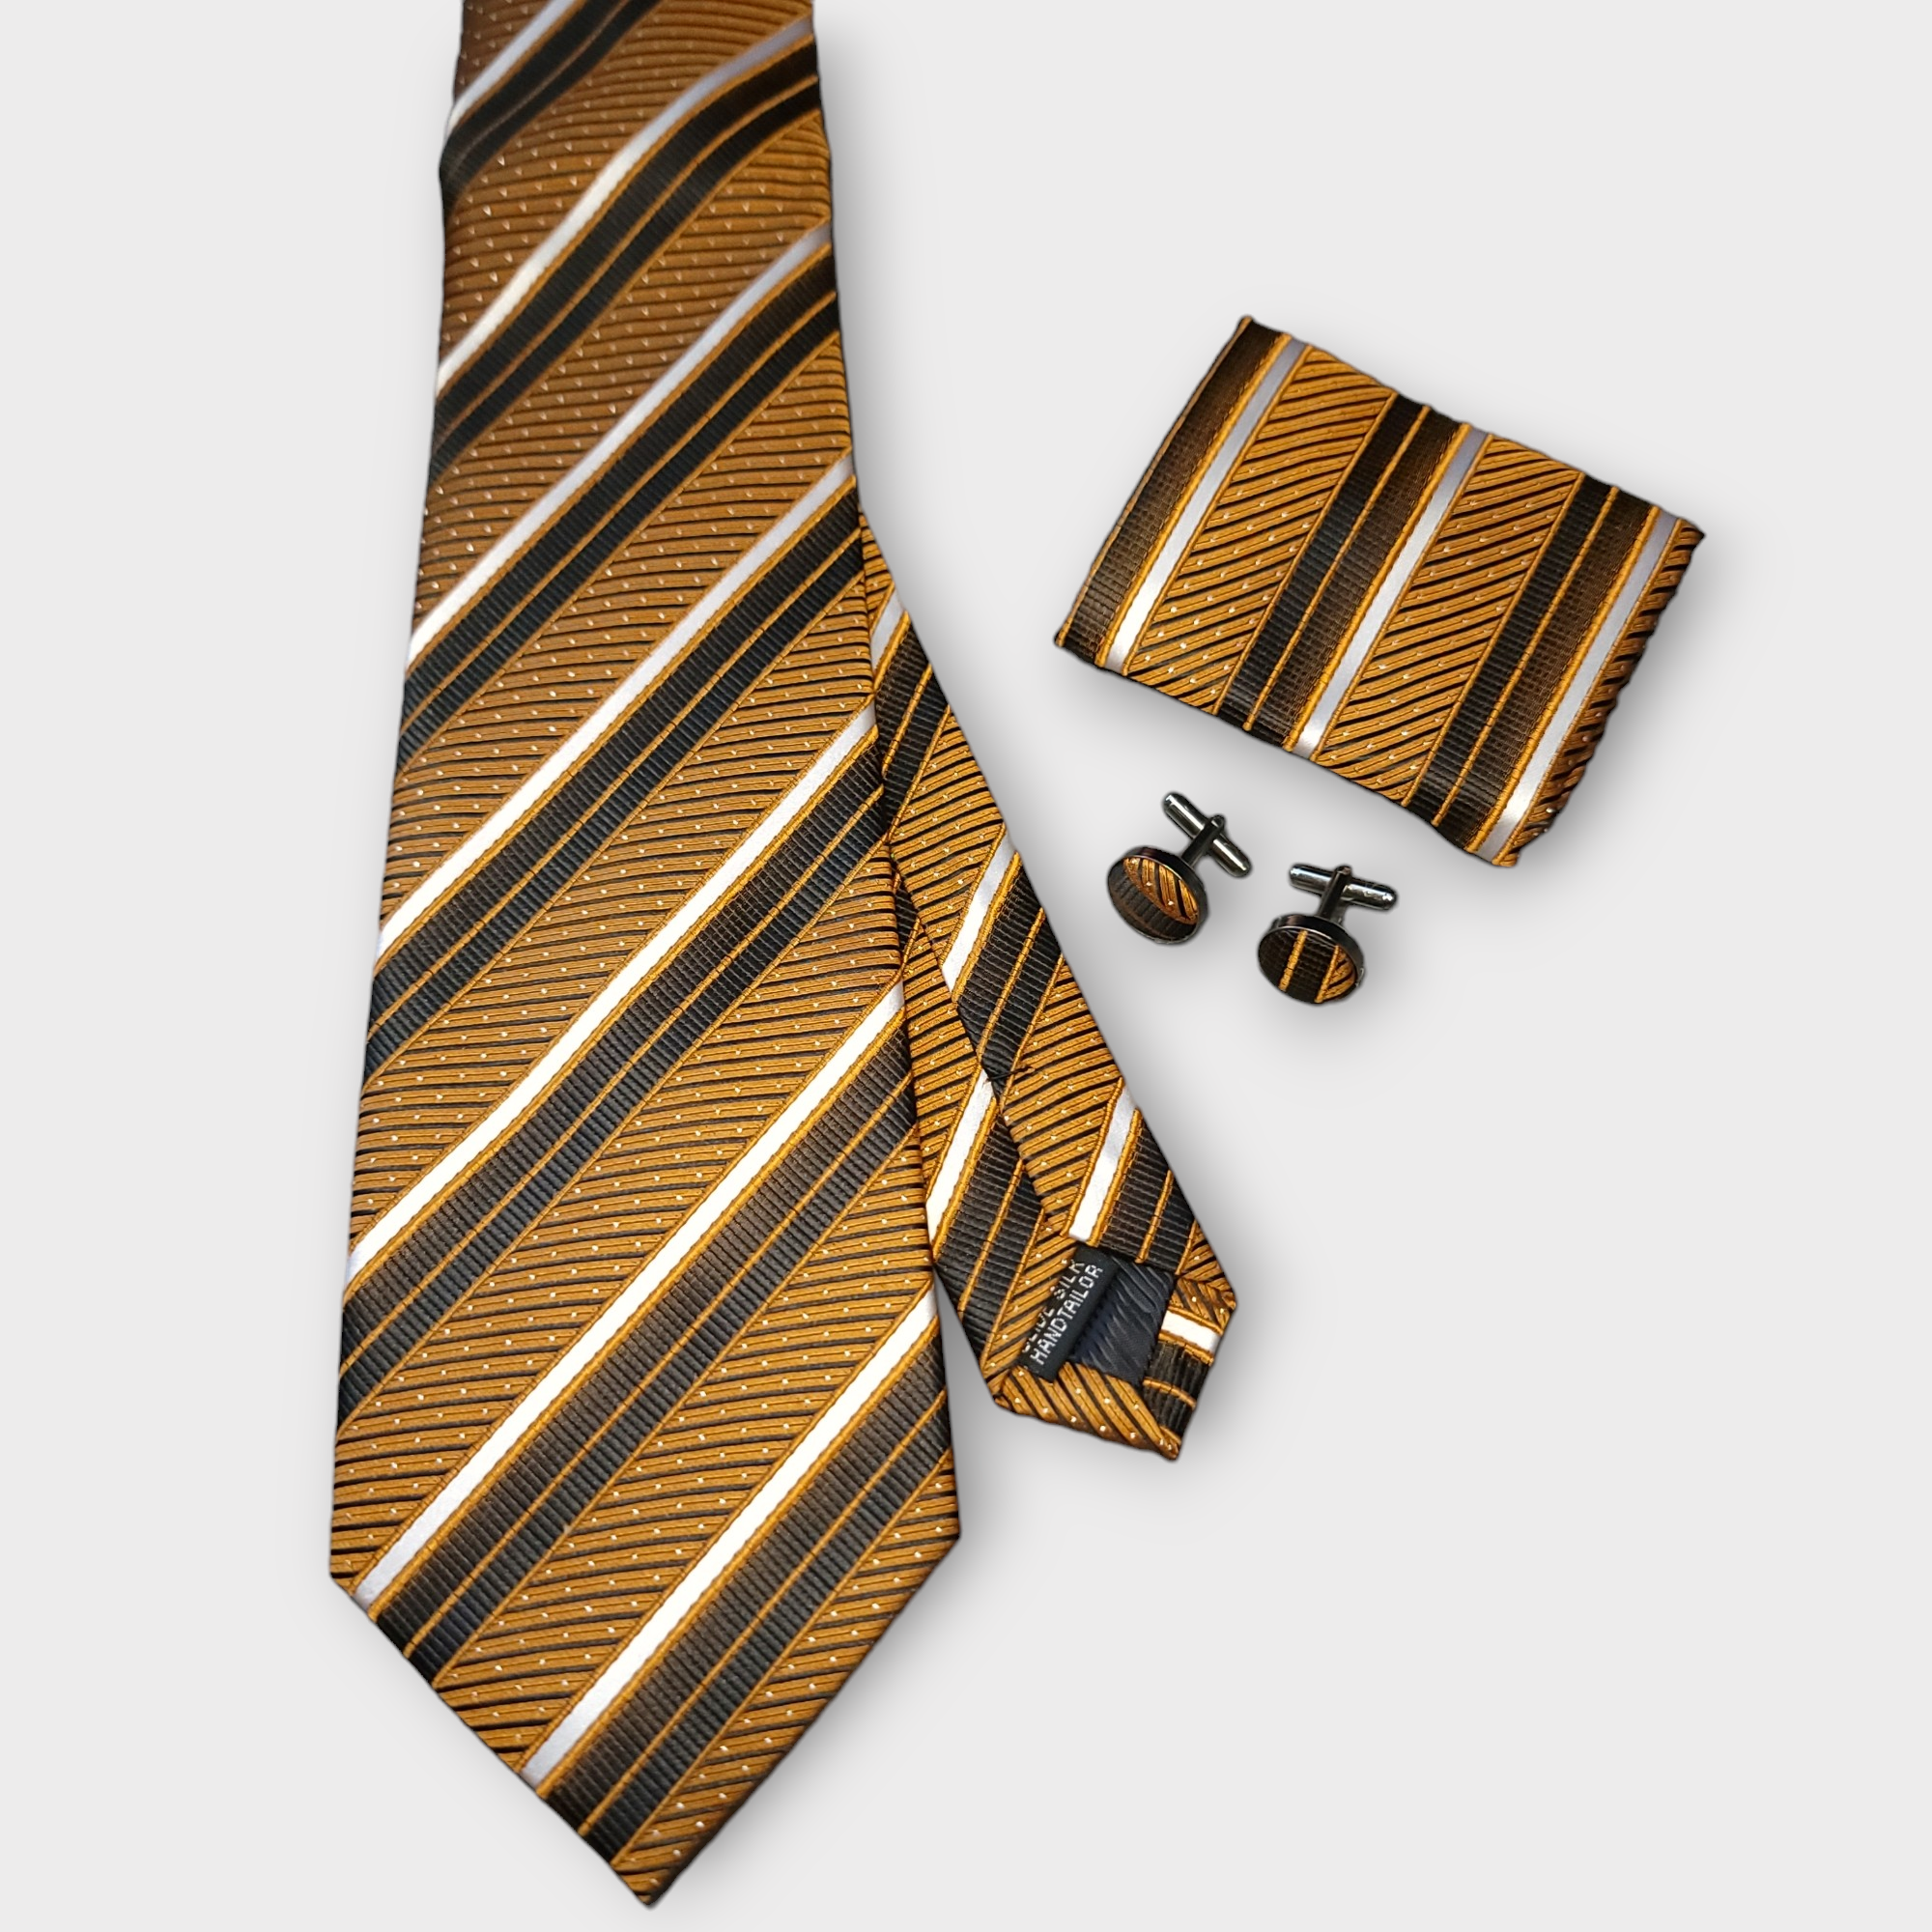 Gold Orange Striped Silk Tie Pocket Square Cufflink Set